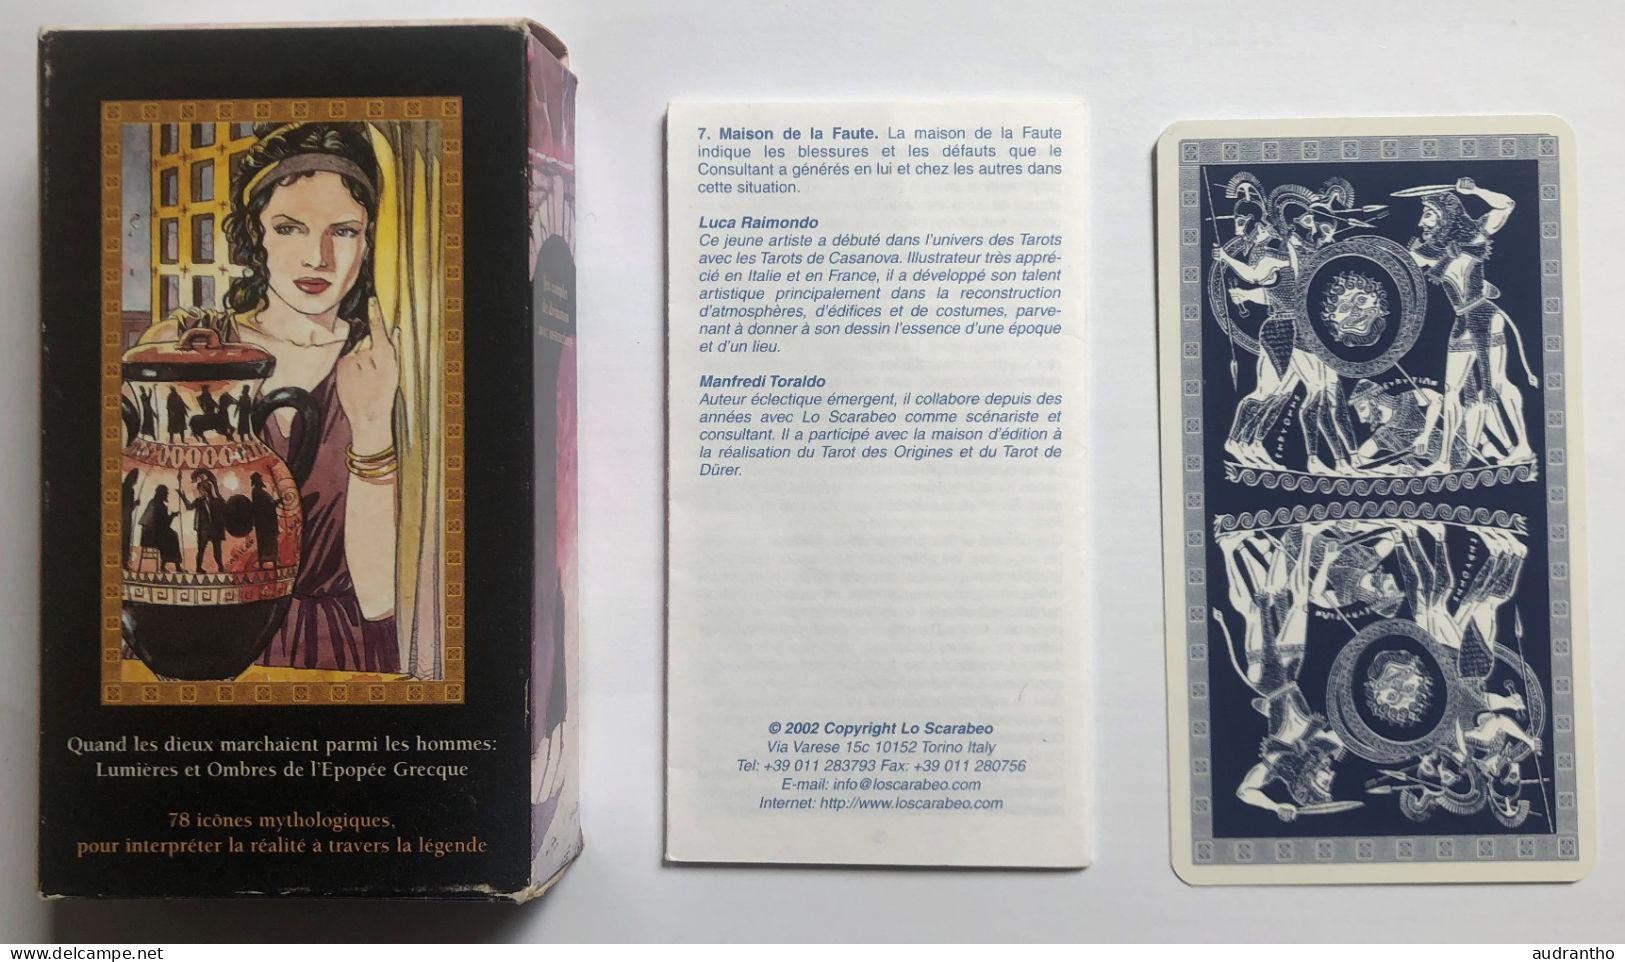 très beau jeu de Tarot divinatoire Voyance - Tarot de l'Olympe - Lo Scarabeo - Luca Raimondo